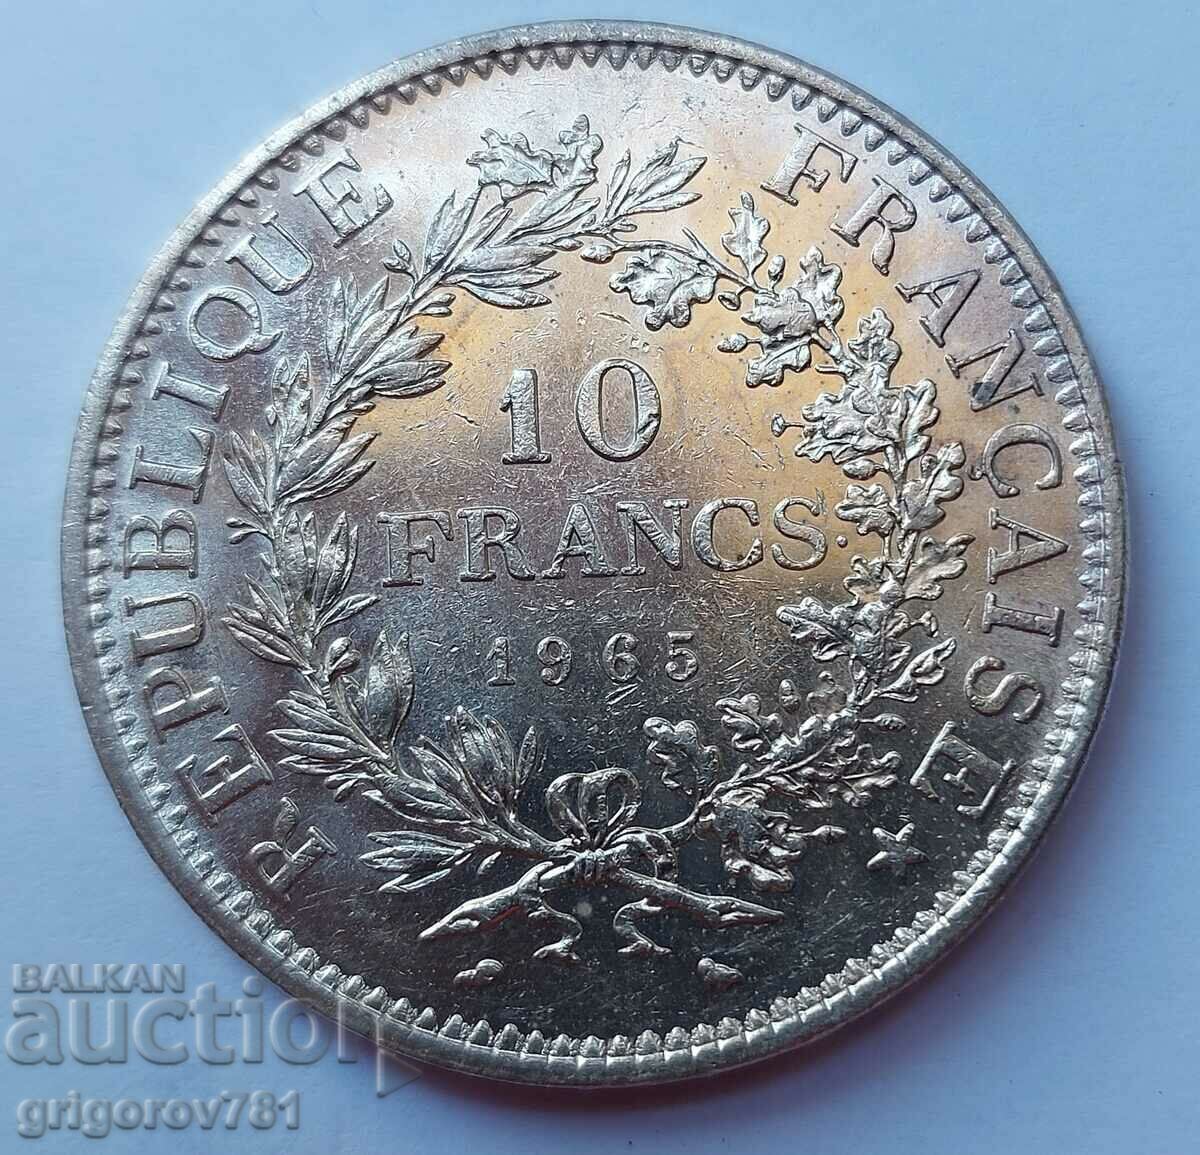 Ασημένιο 10 φράγκα Γαλλία 1965 - ασημένιο νόμισμα # 2